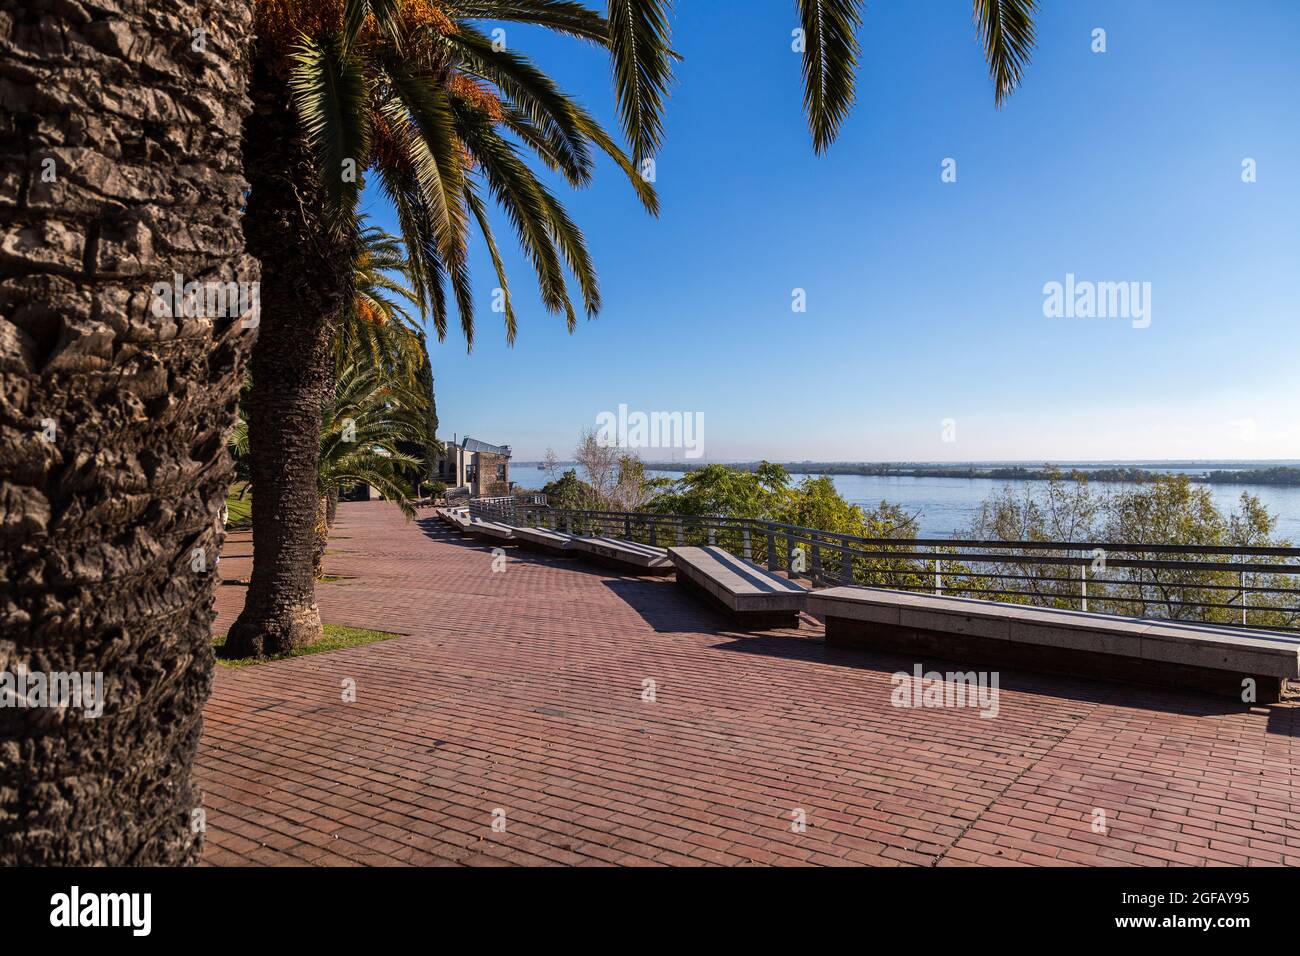 ROSARIO, ARGENTINA .Spain Park placé sur la côte de la rivière Parana à Rosario. Promenade avec palmiers. Banque D'Images